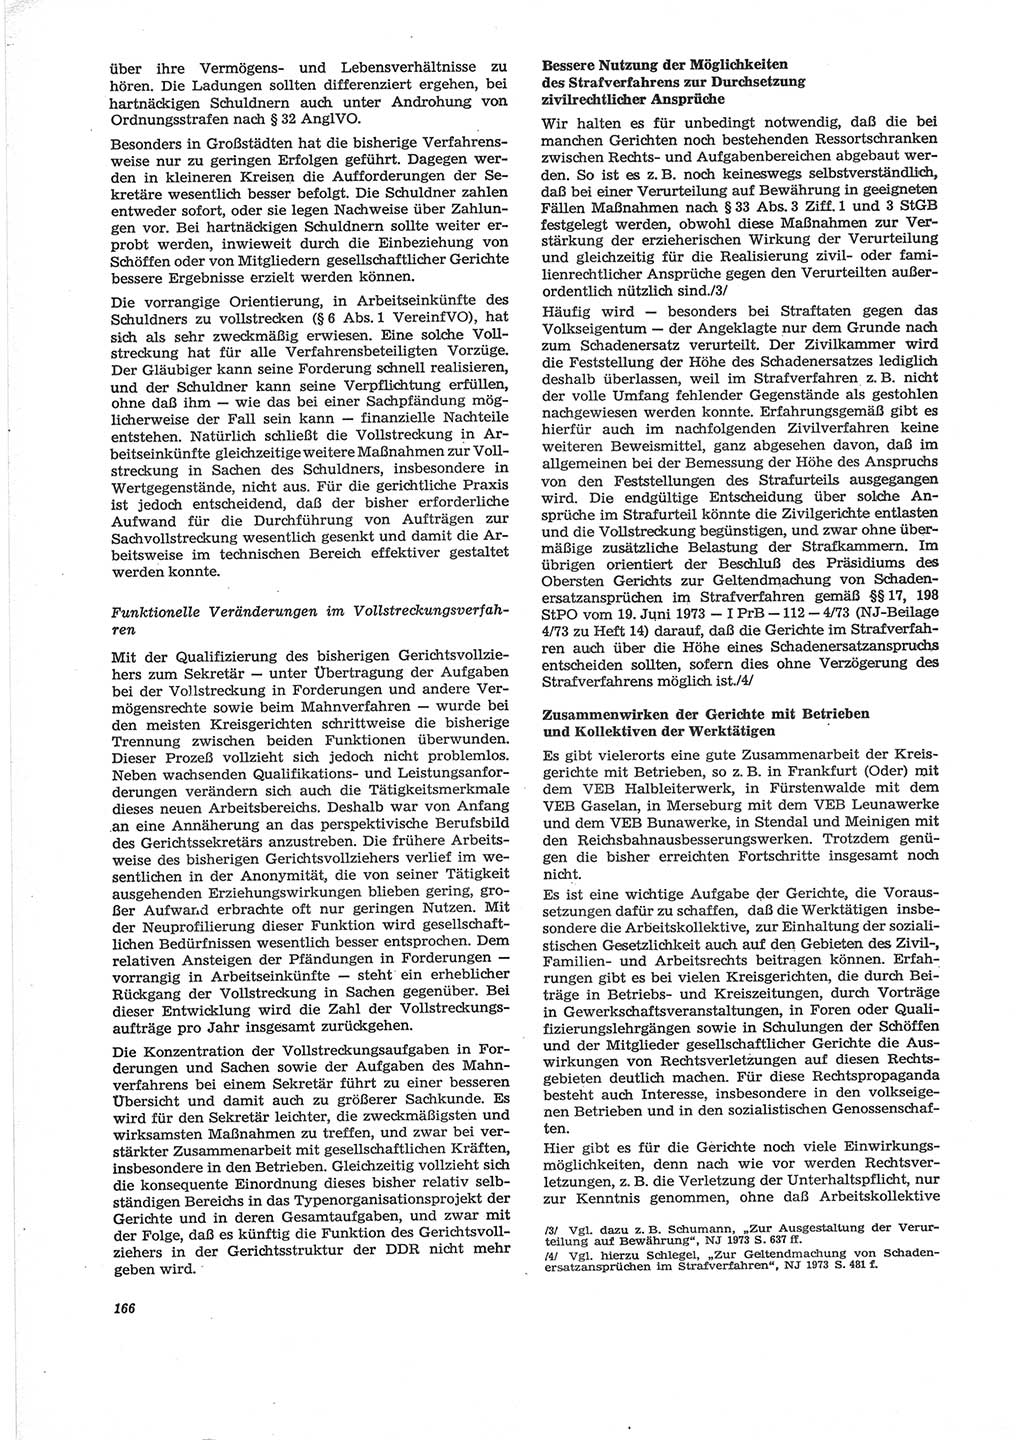 Neue Justiz (NJ), Zeitschrift für Recht und Rechtswissenschaft [Deutsche Demokratische Republik (DDR)], 28. Jahrgang 1974, Seite 166 (NJ DDR 1974, S. 166)